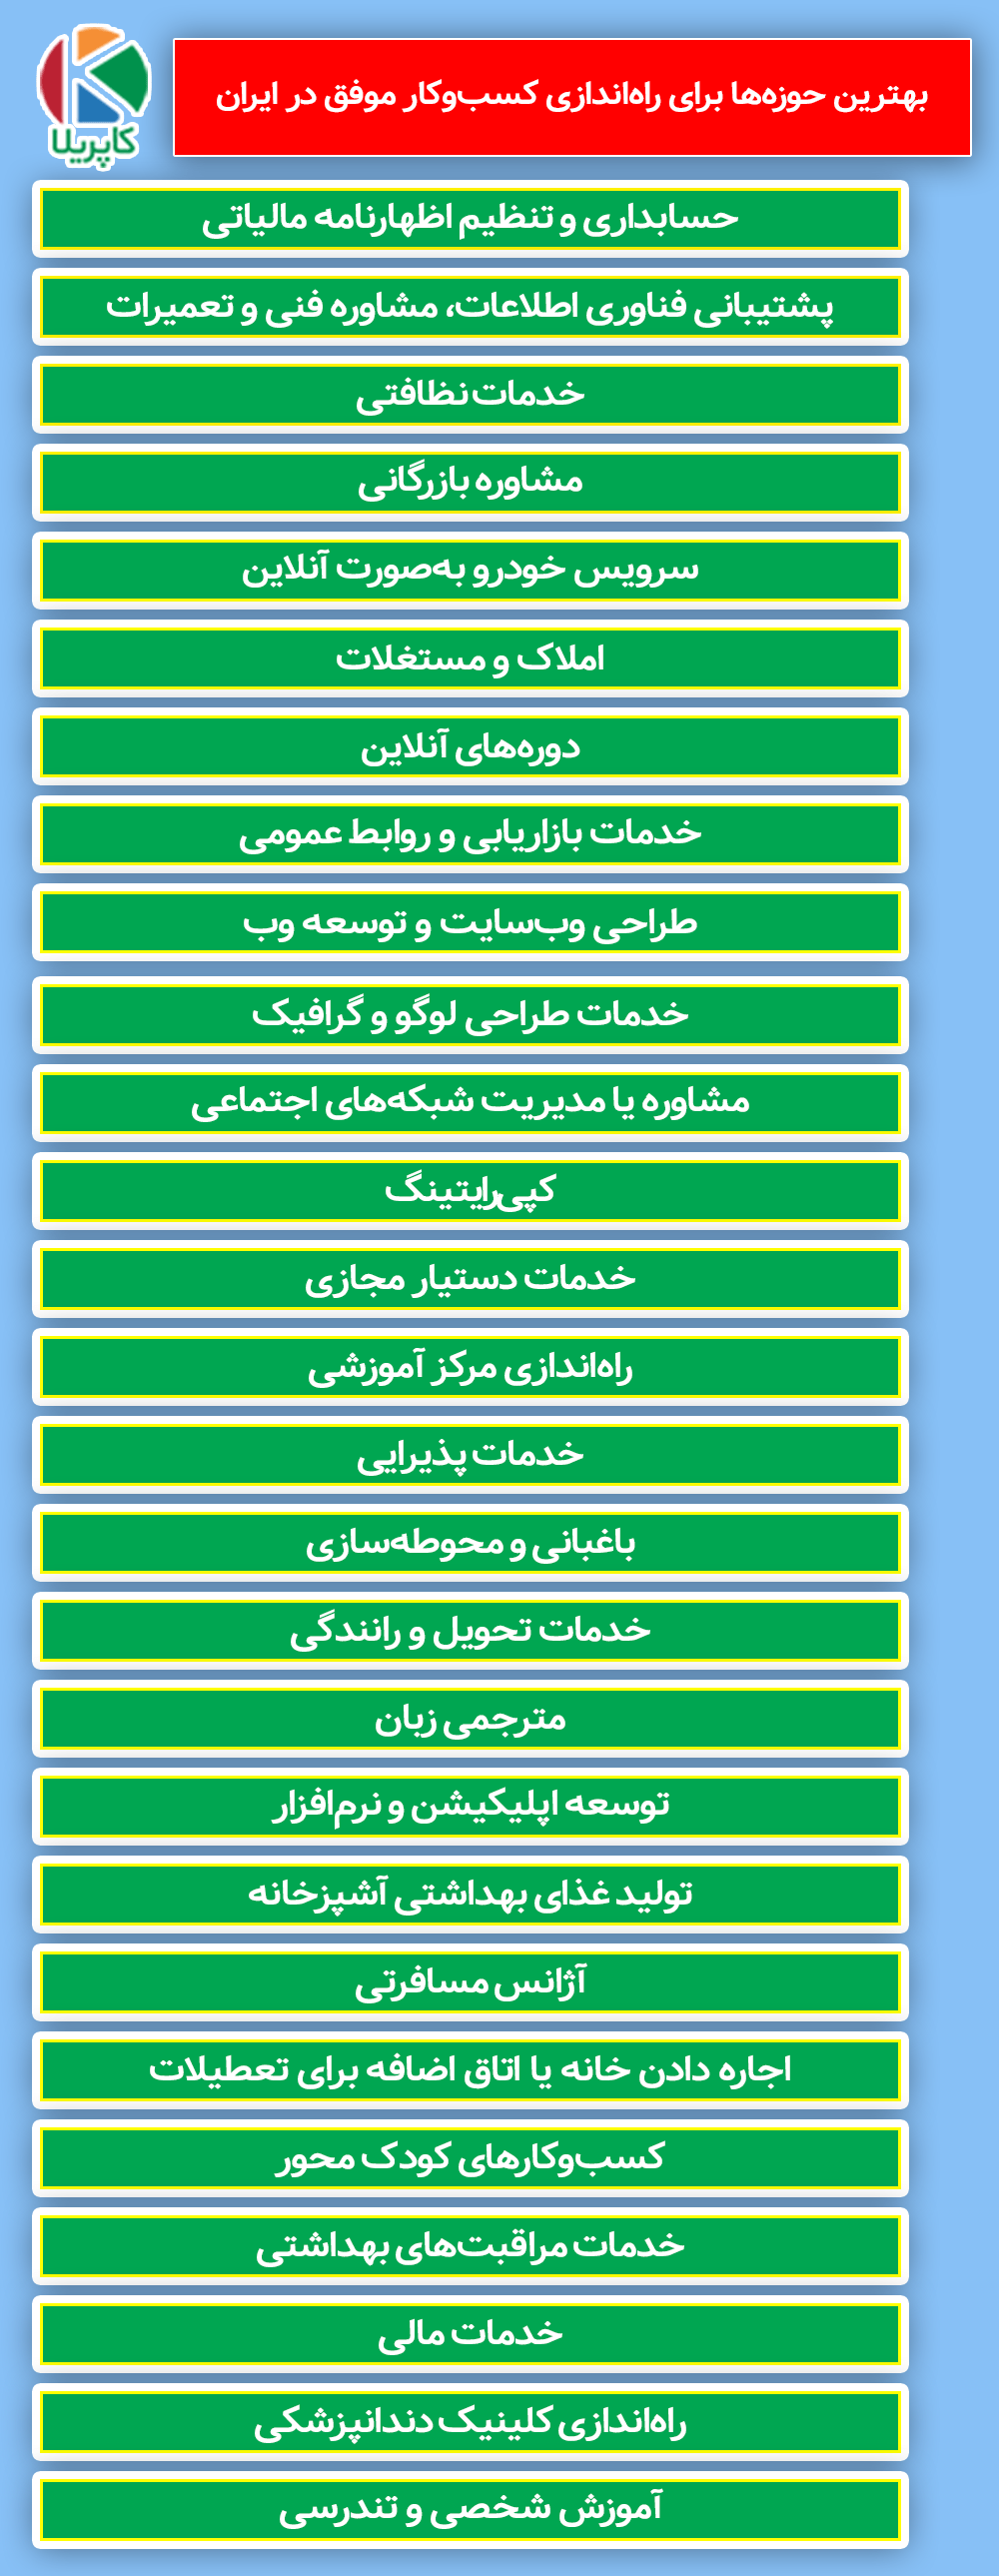 لیست کسب و کارهای موفق در ایران - لیست استارت آپ های ایرانی